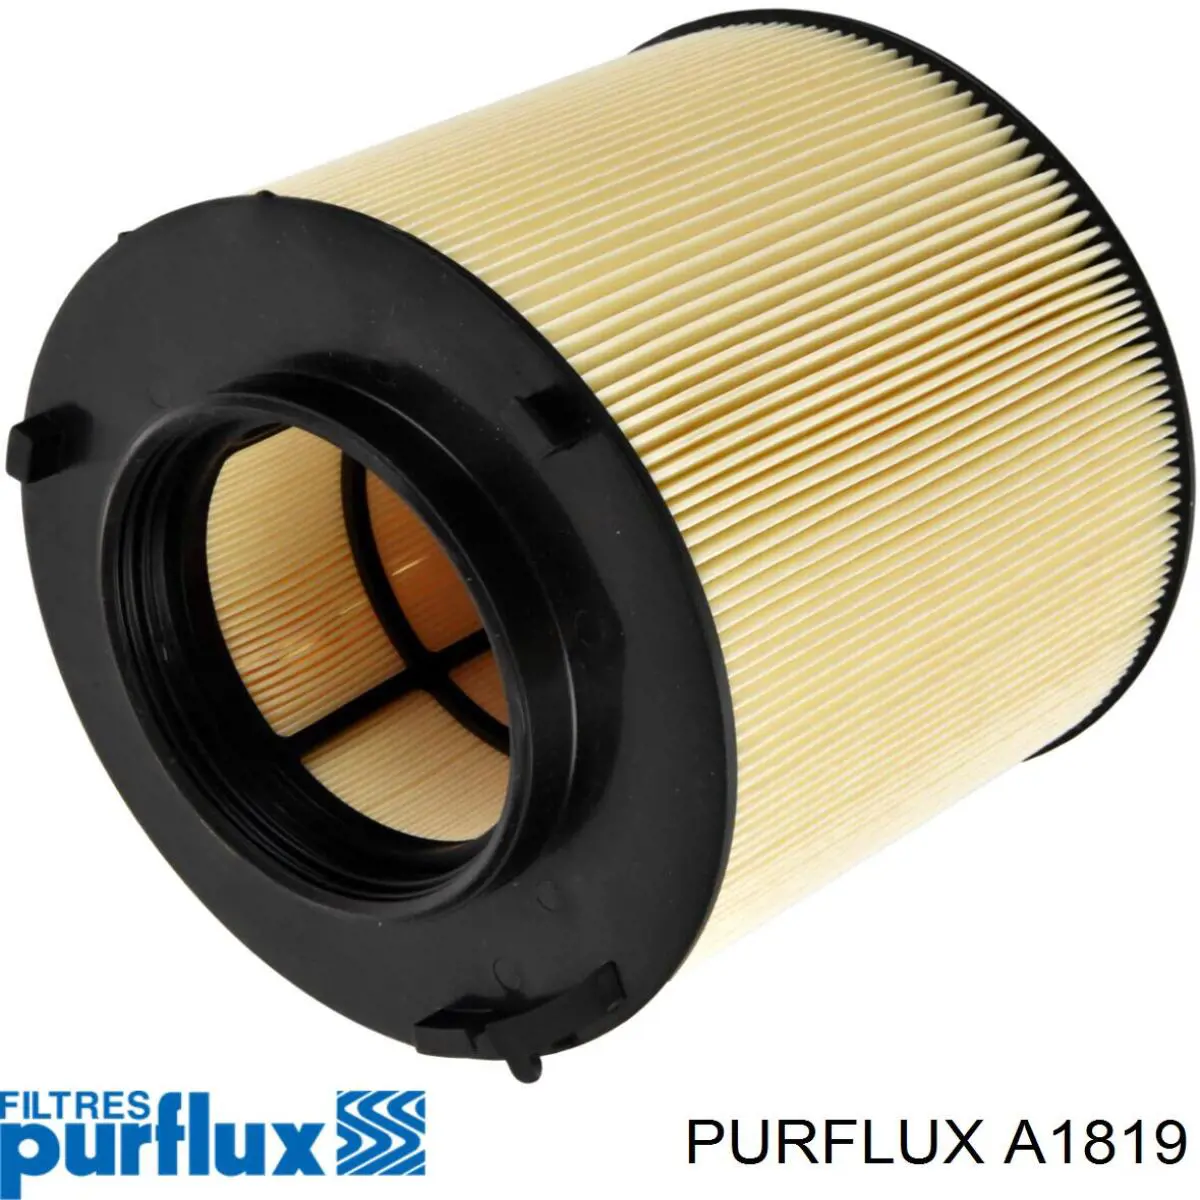 A1819 Purflux filtro de aire